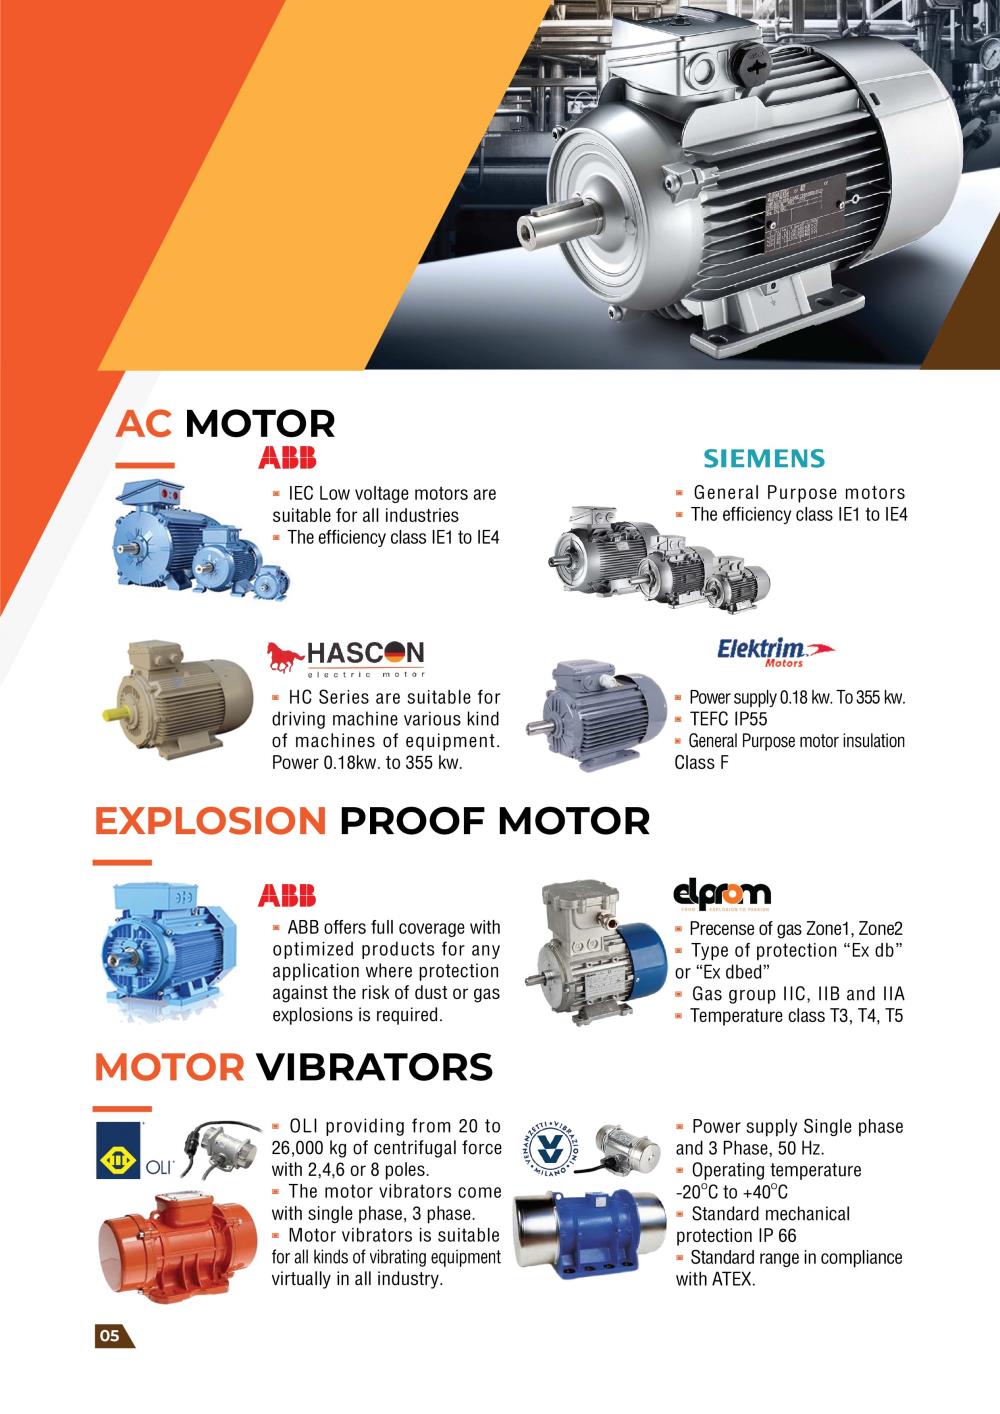 มอเตอร์/ มอเตอร์ไฟฟ้า/ Induction motor /มอเตอร์เบรค /Brake motor ทั้ง AC brake motor และ DC brake motor ,มอเตอร์/ มอเตอร์ไฟฟ้า/ Induction motor /มอเตอร์เบรค /Brake motor ทั้ง AC brake motor และ DC brake motor ,ABB ,SIEMENS,HASCON, ELEKTRIM,Machinery and Process Equipment/Engines and Motors/Motors